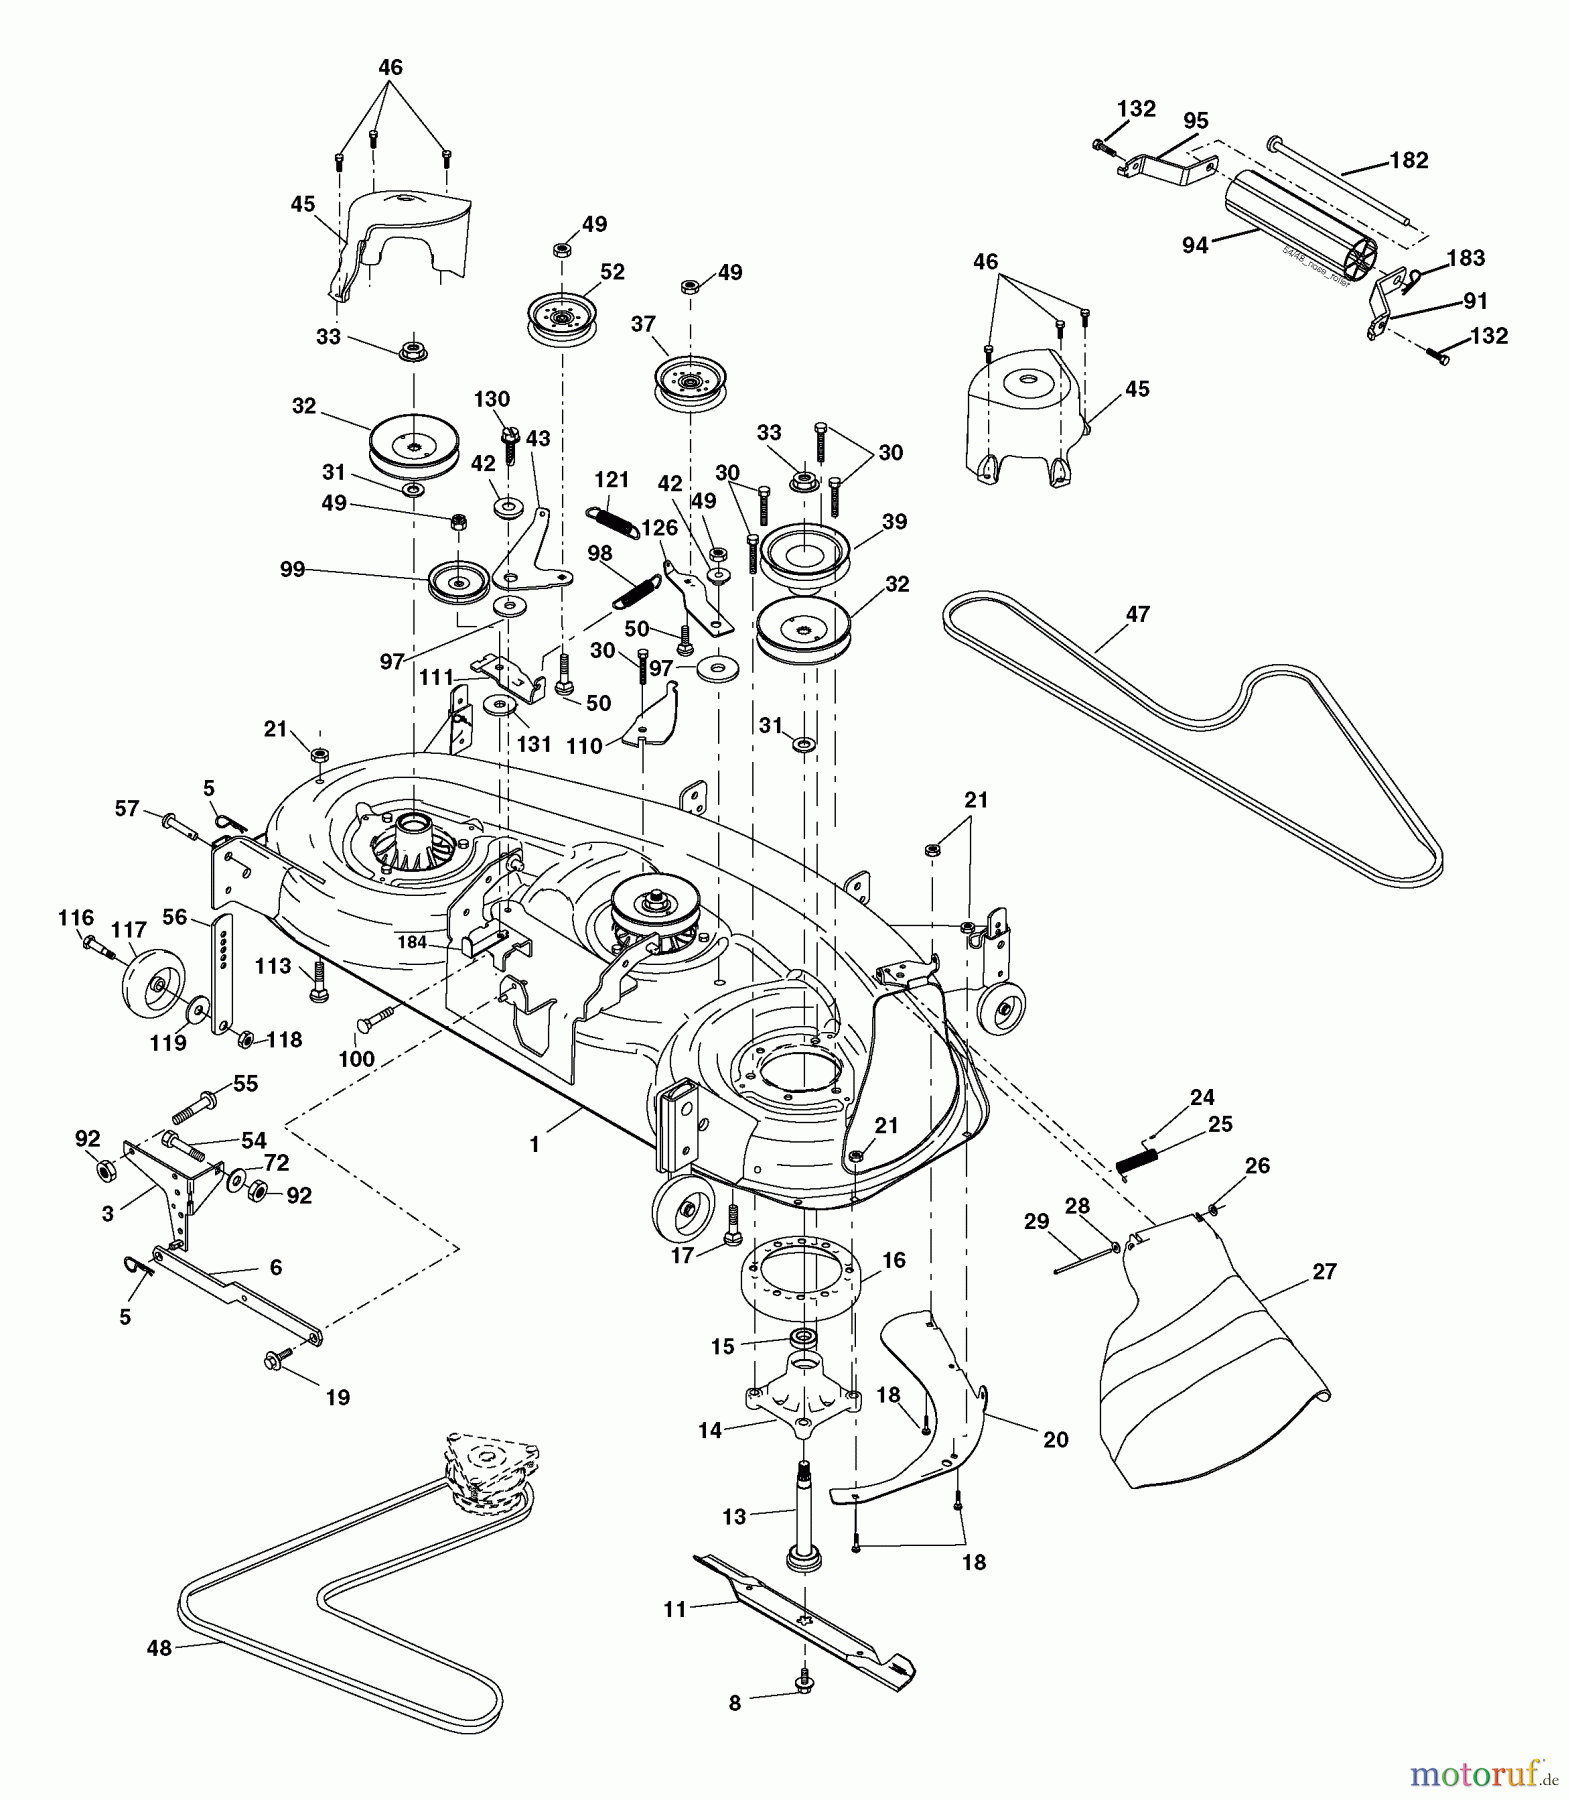  Husqvarna Rasen und Garten Traktoren YTH 2448 (960130007) (917.279080) - Husqvarna Yard Tractor (2004-12 & After) (Sears Craftsman) Mower Deck